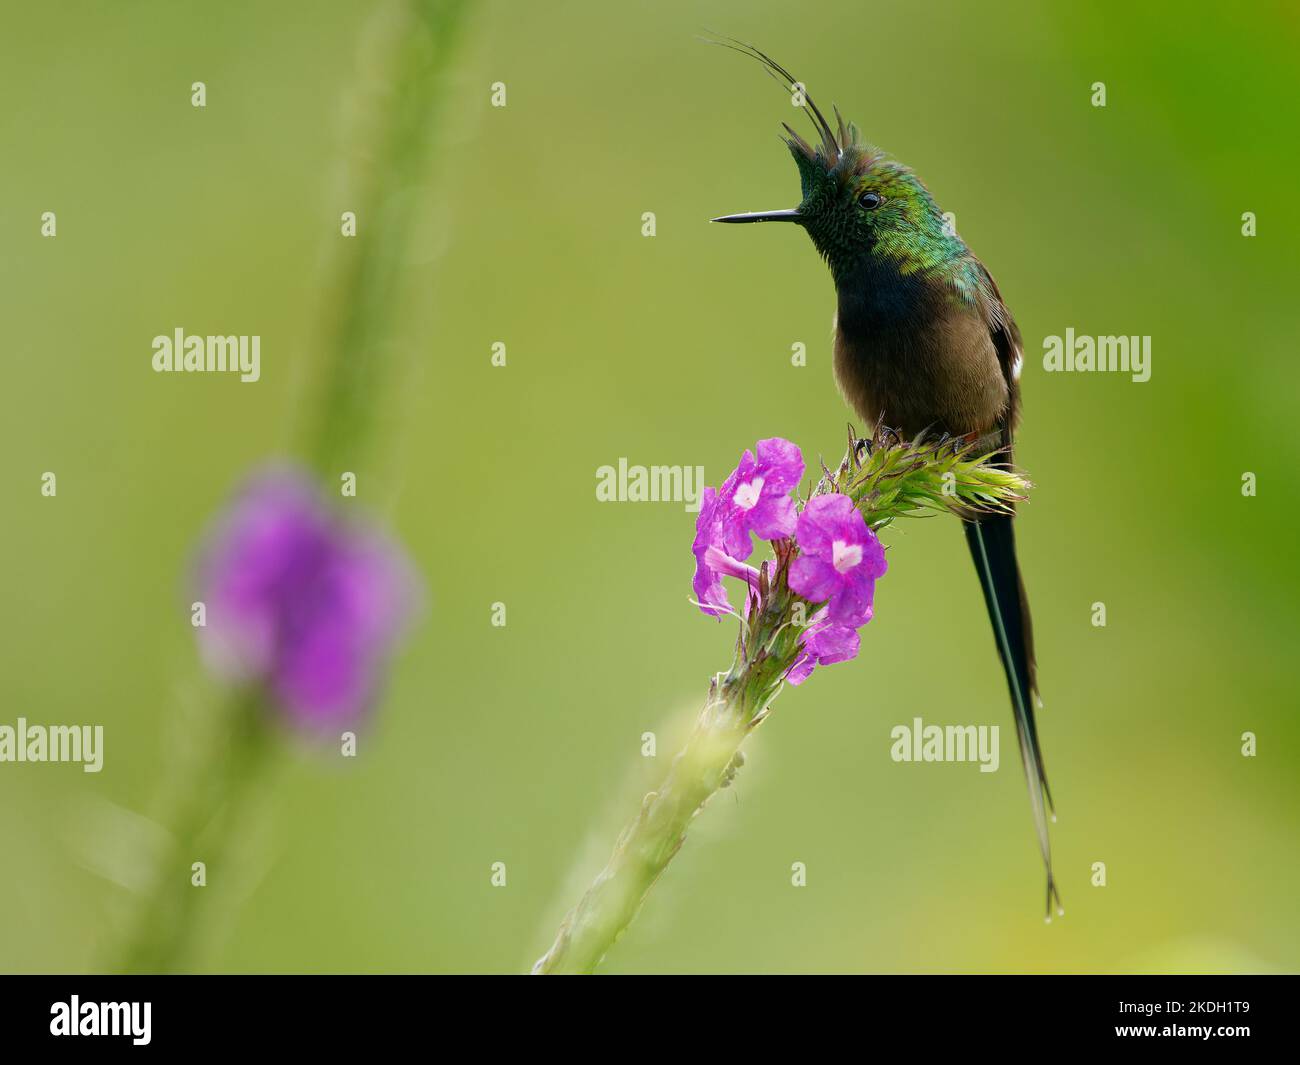 Drahtrand Thorntail - Discosura popelairii grüner Kolibri mit langem Kamm und langem scharfen Schwanz, Vogel auf der violetten Blume und grünem Hintergrund, f Stockfoto